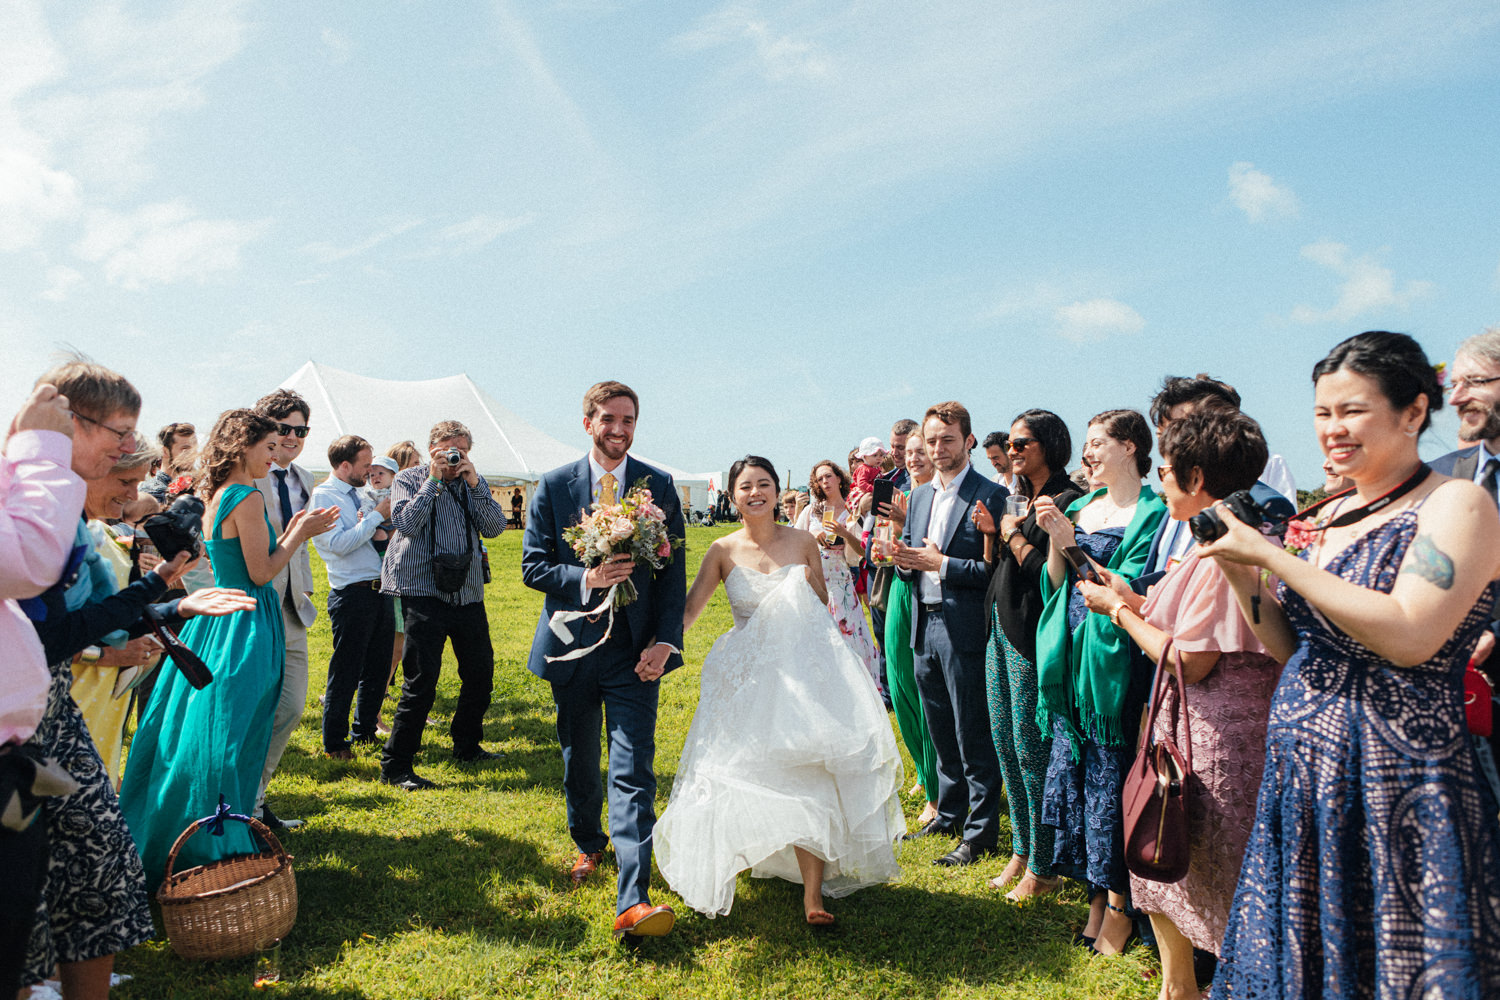 Tremorna Farm wedding, wedding ceremony, outdoor wedding, bride and groom, barefoot bride